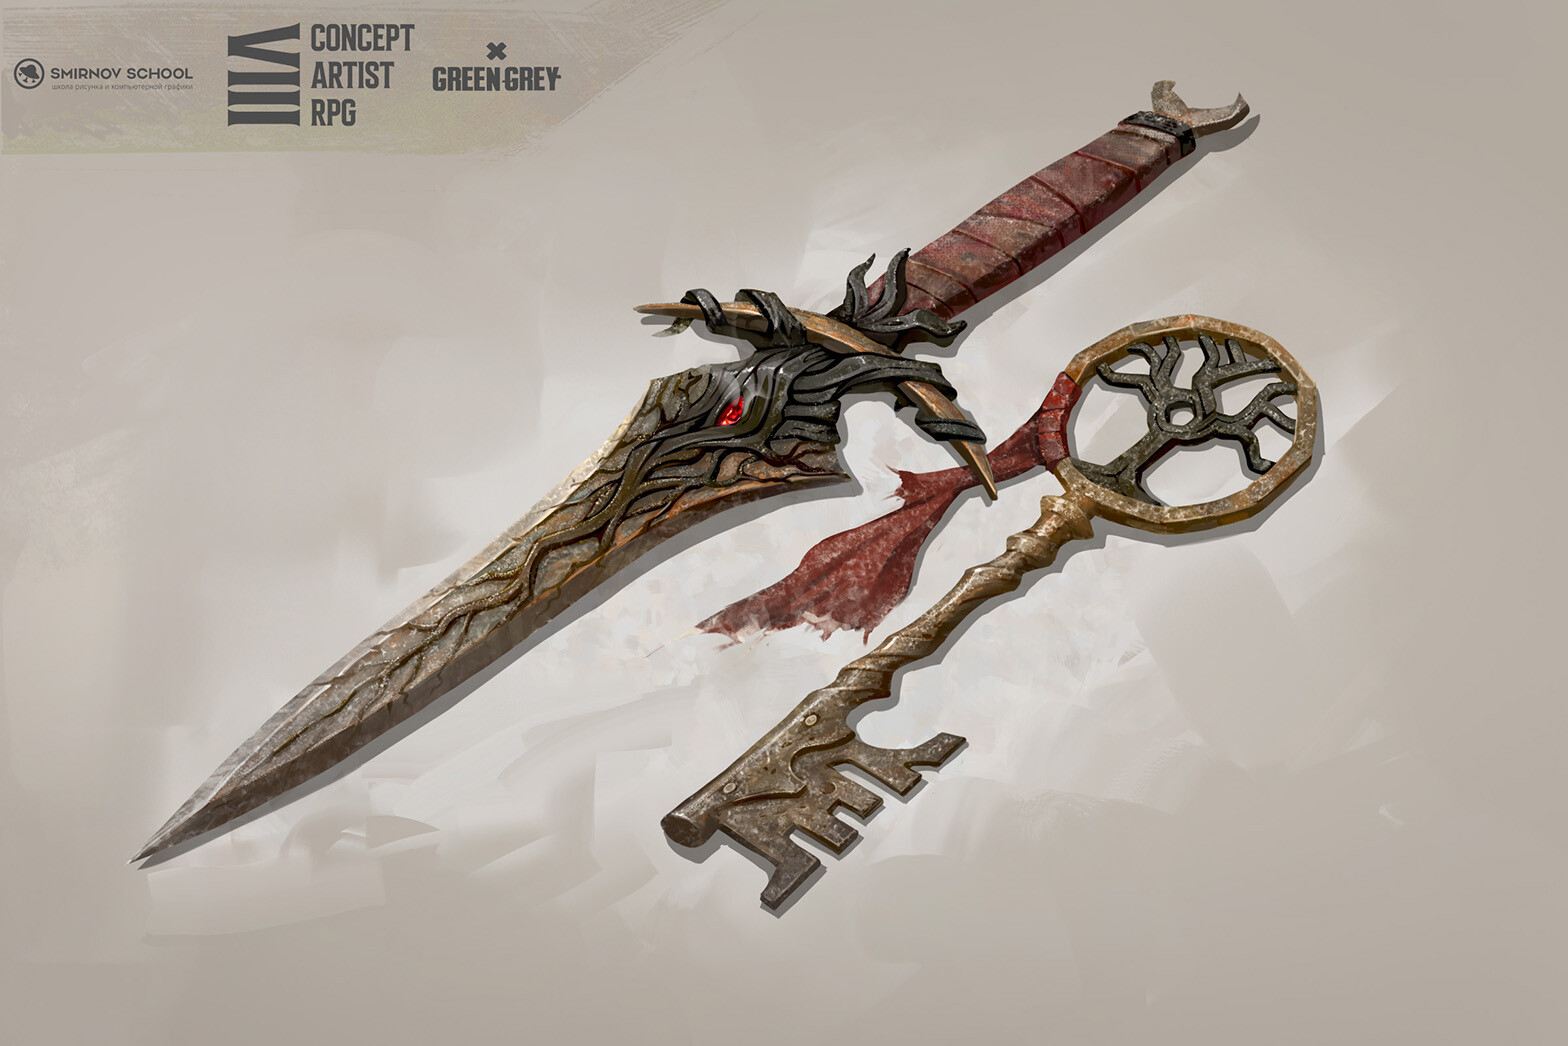 7. Soul dagger and key